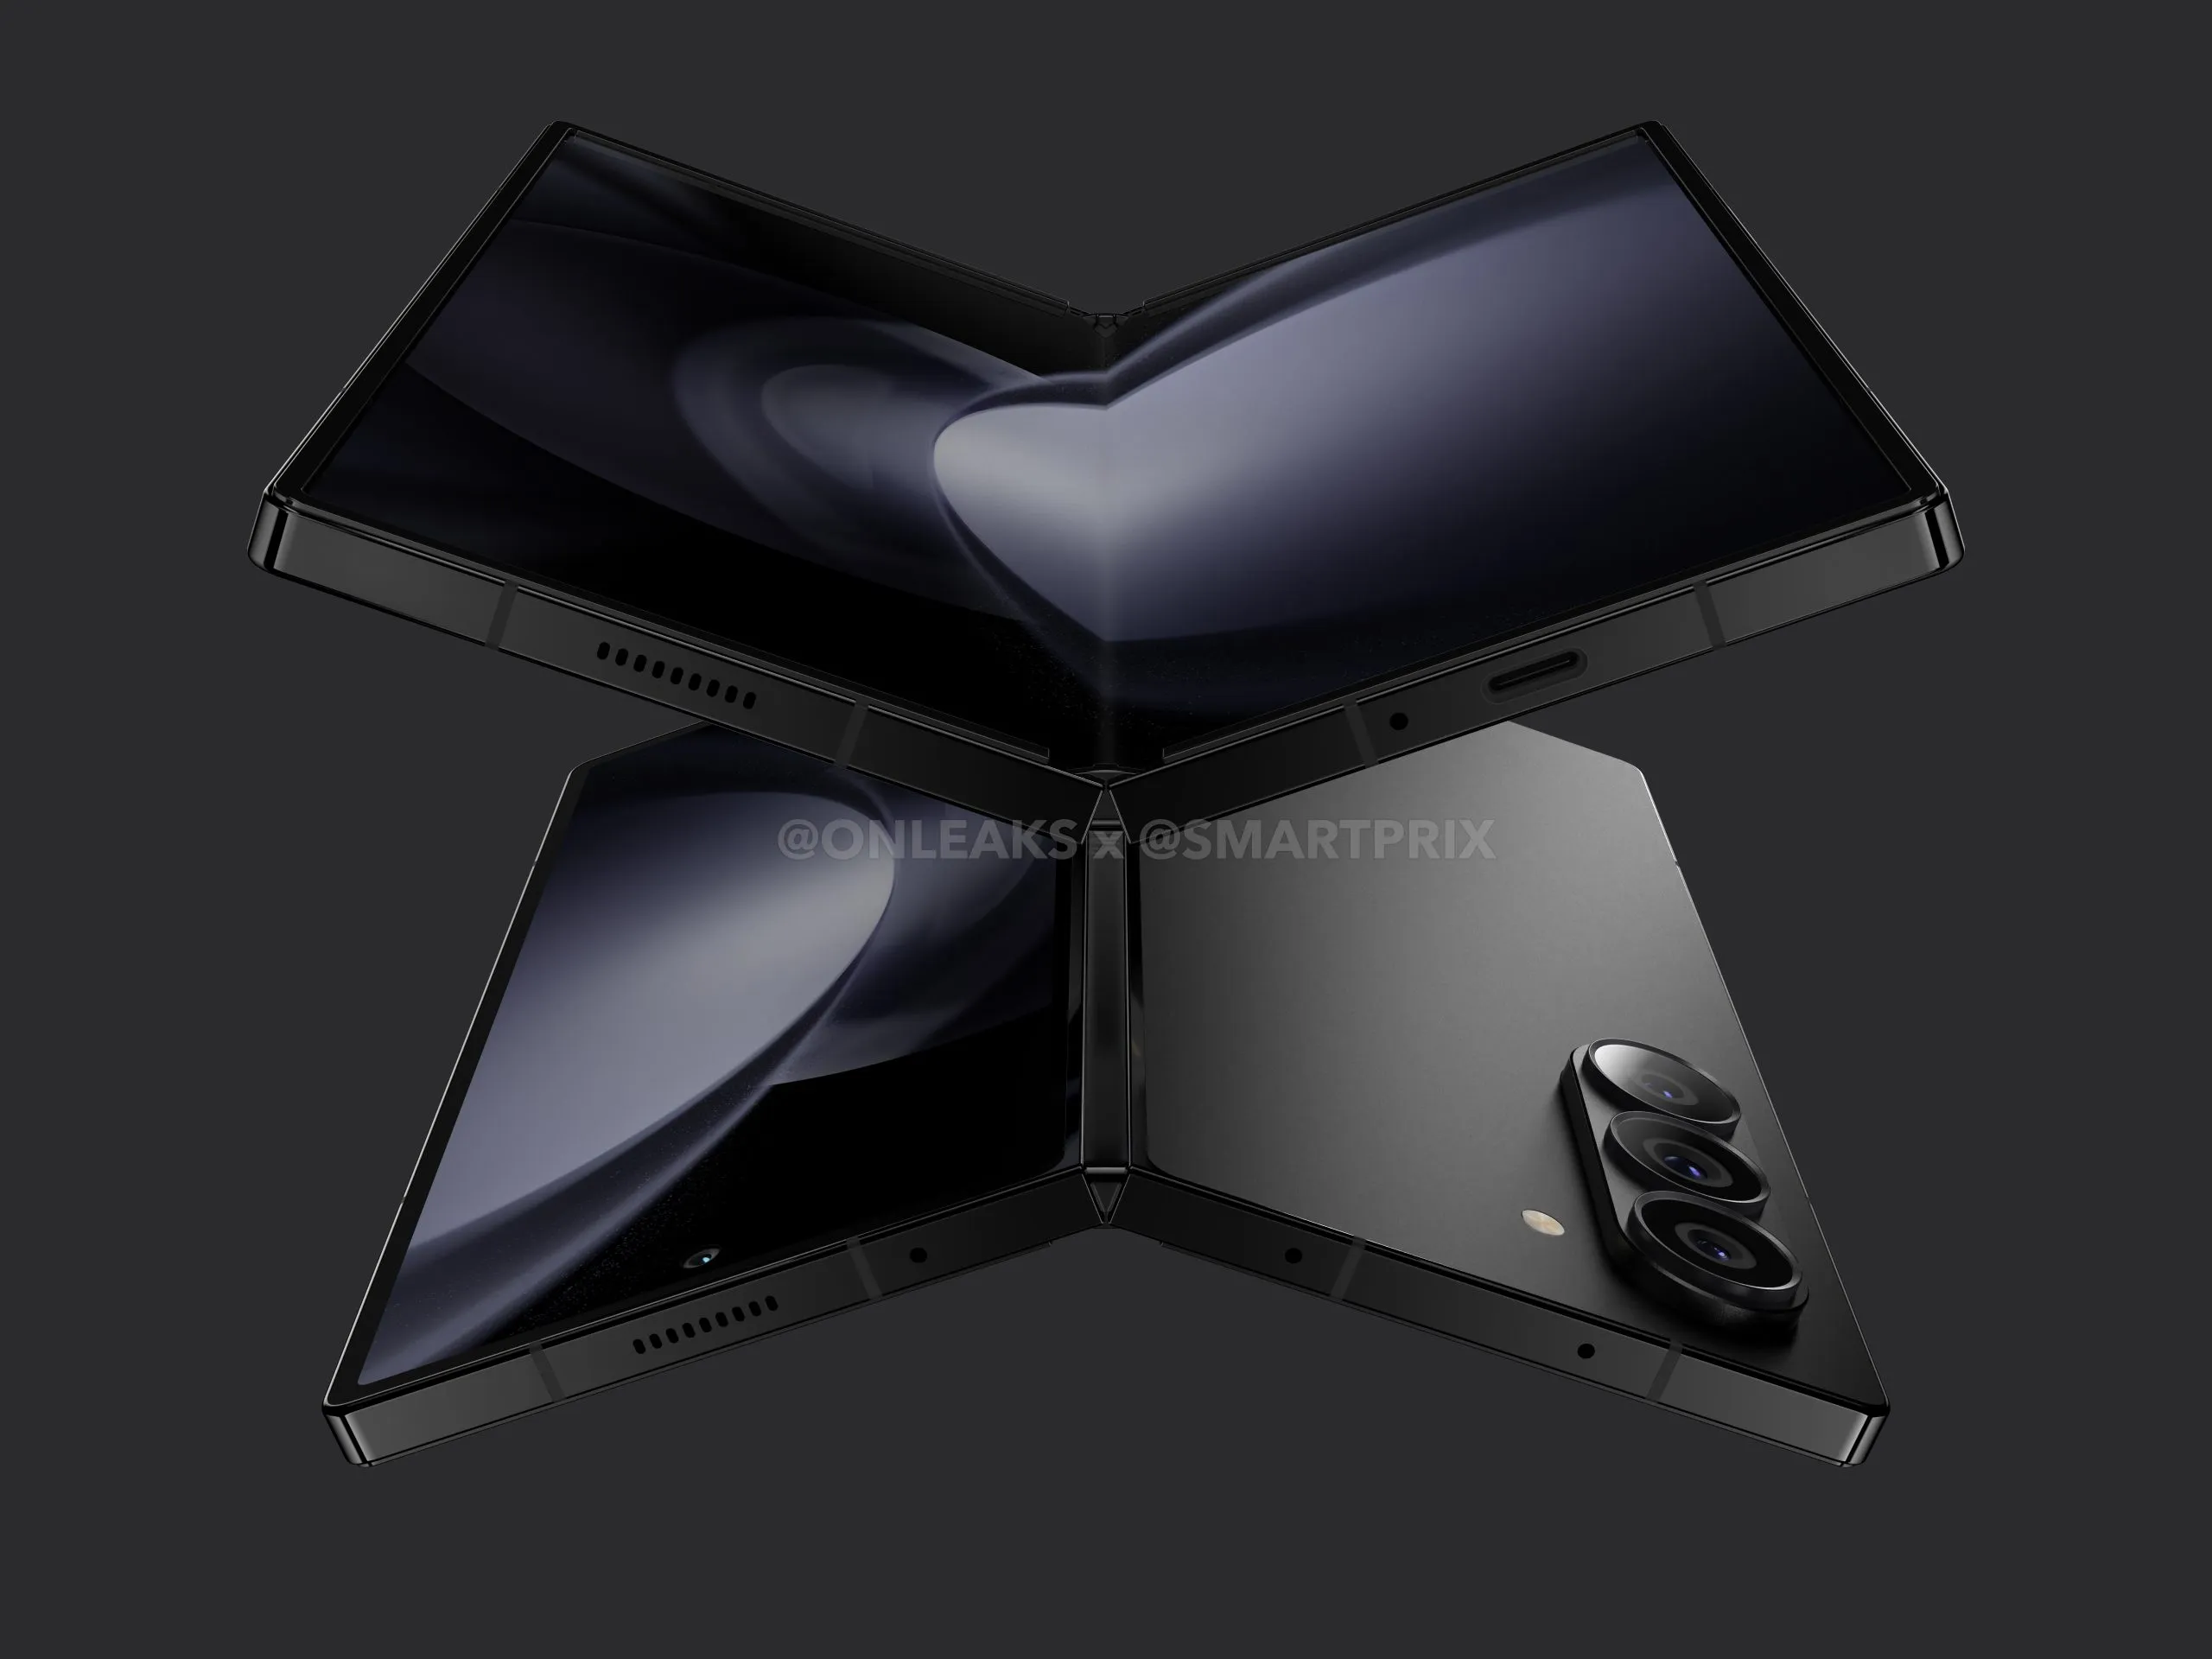 Inchangé : Le smartphone pliable Samsung Galaxy Fold 6 sera doté d'une batterie de 4400mAh et d'une capacité de charge de 25W